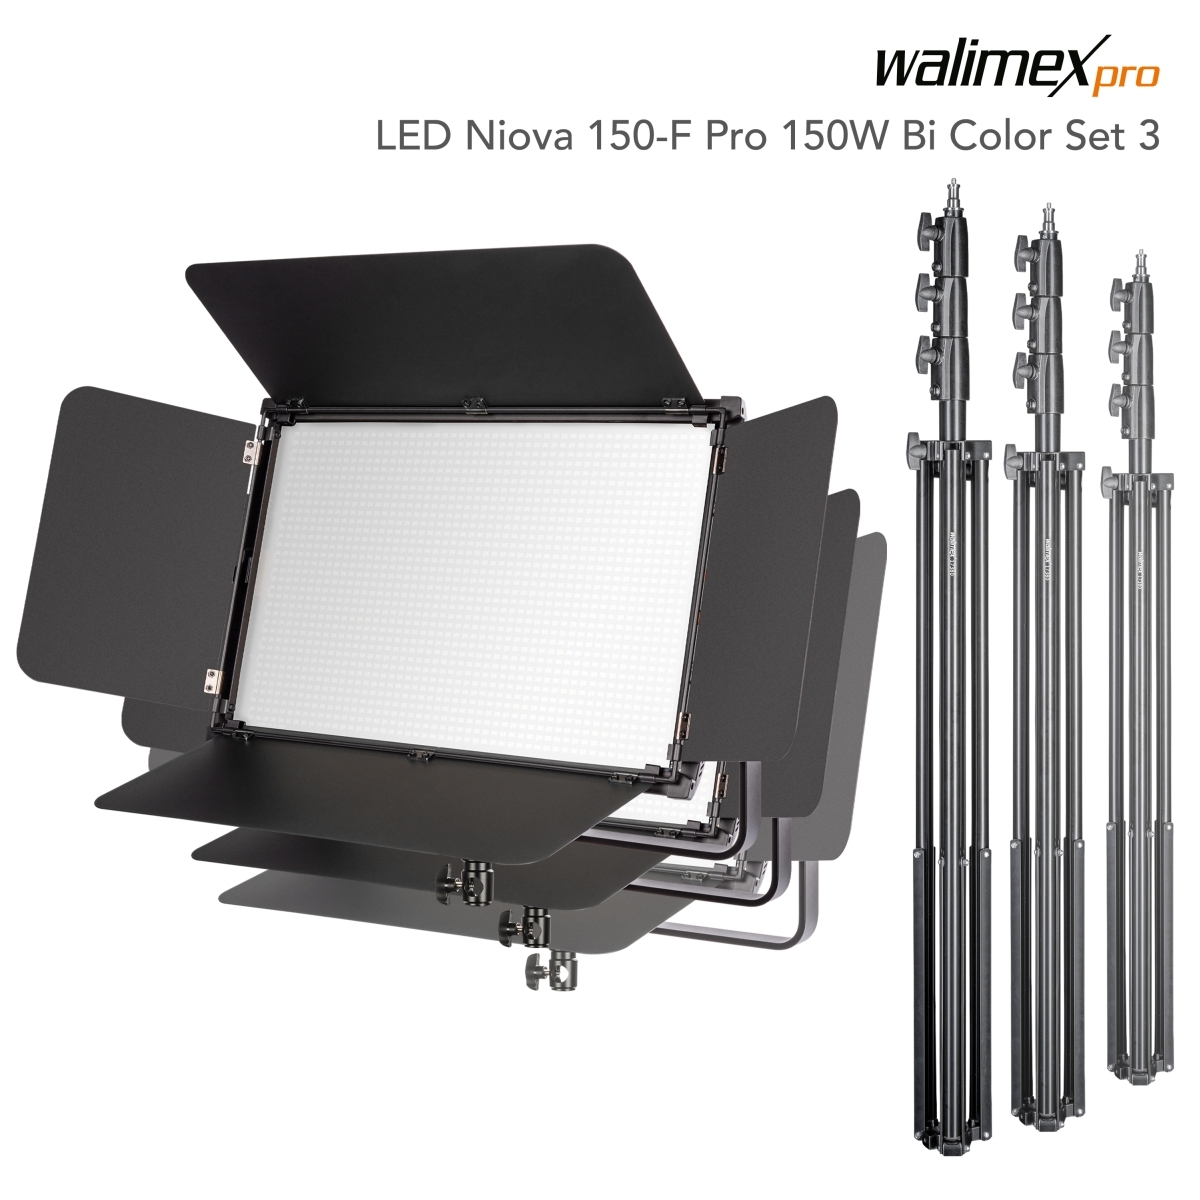 Walimex pro LED Niova 150-F Pro 150W Bi Color Set3